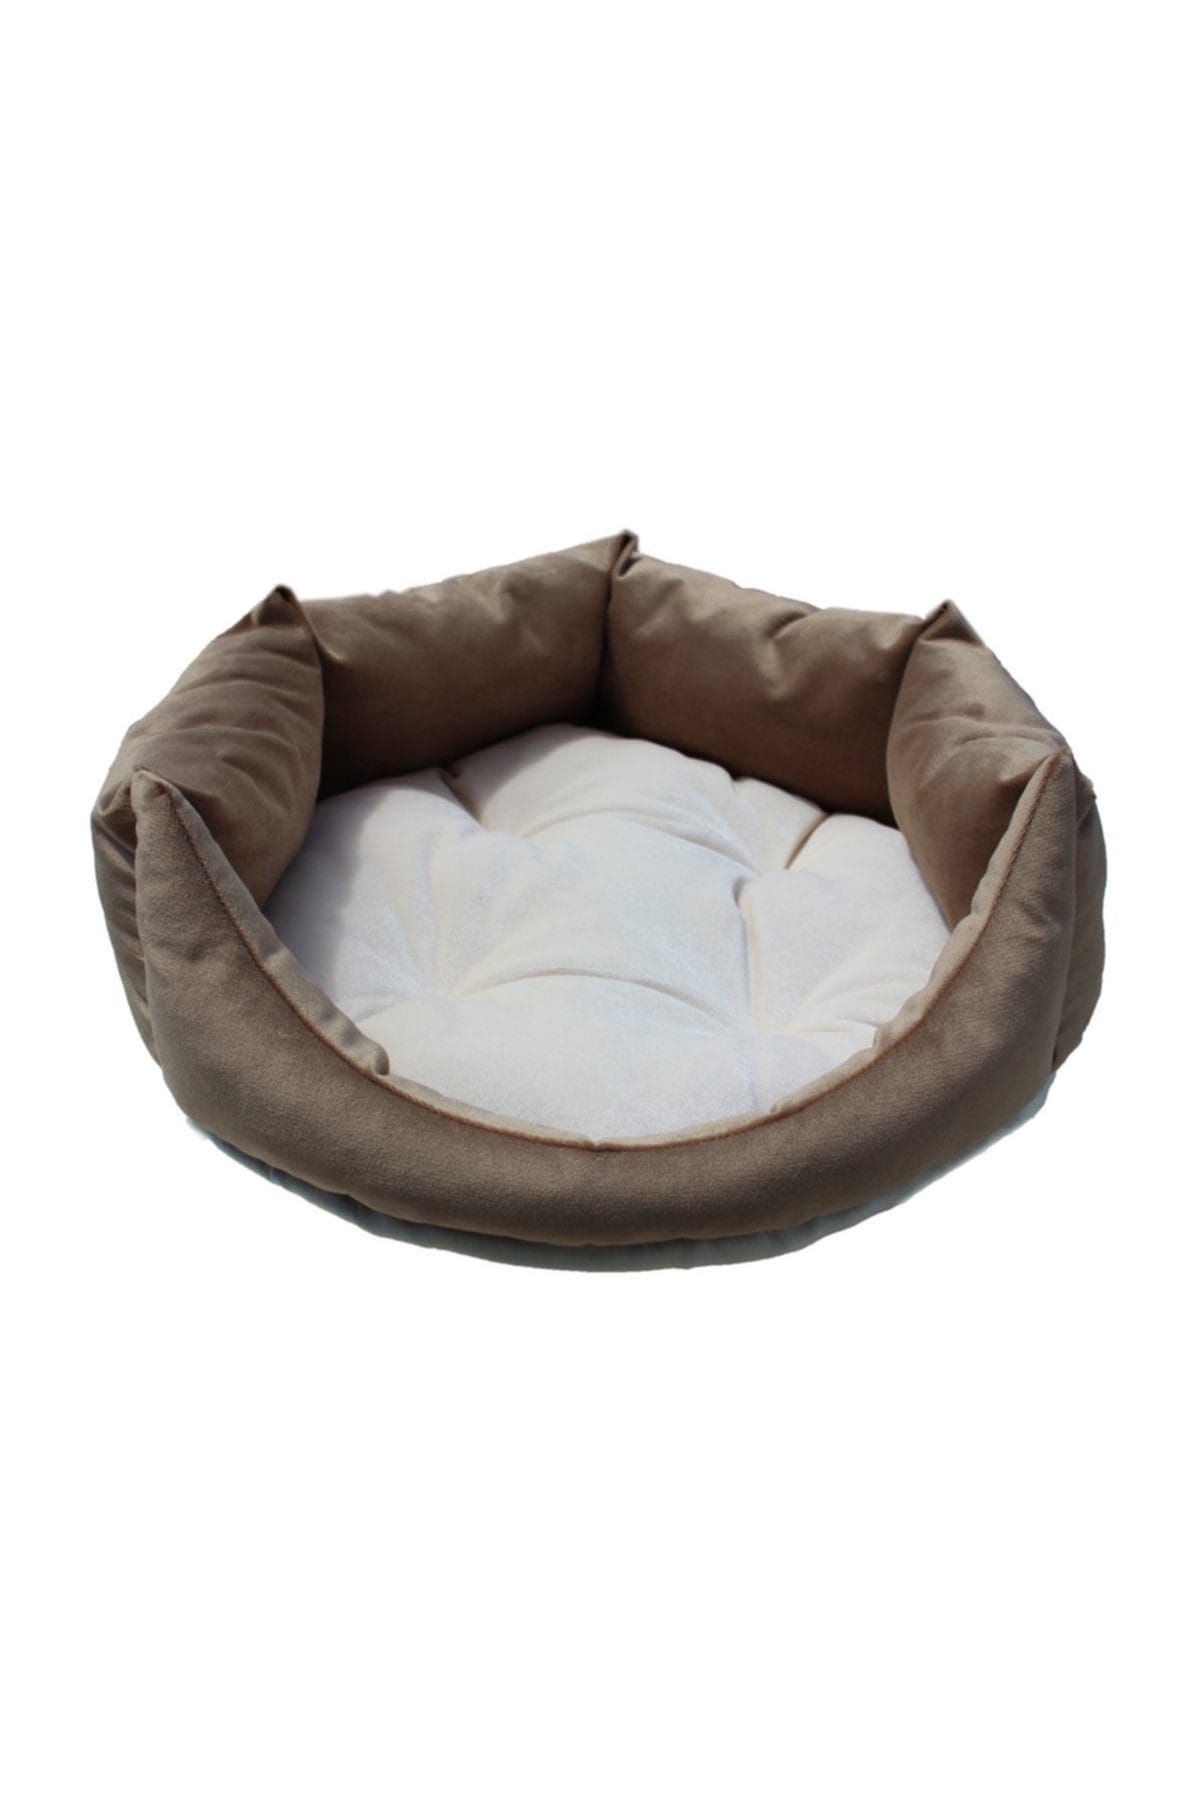 Tulyano Soft Kedi Köpek Yatağı Yıkanabilir Silinebilir Küçük Irk  50*50*18 cm